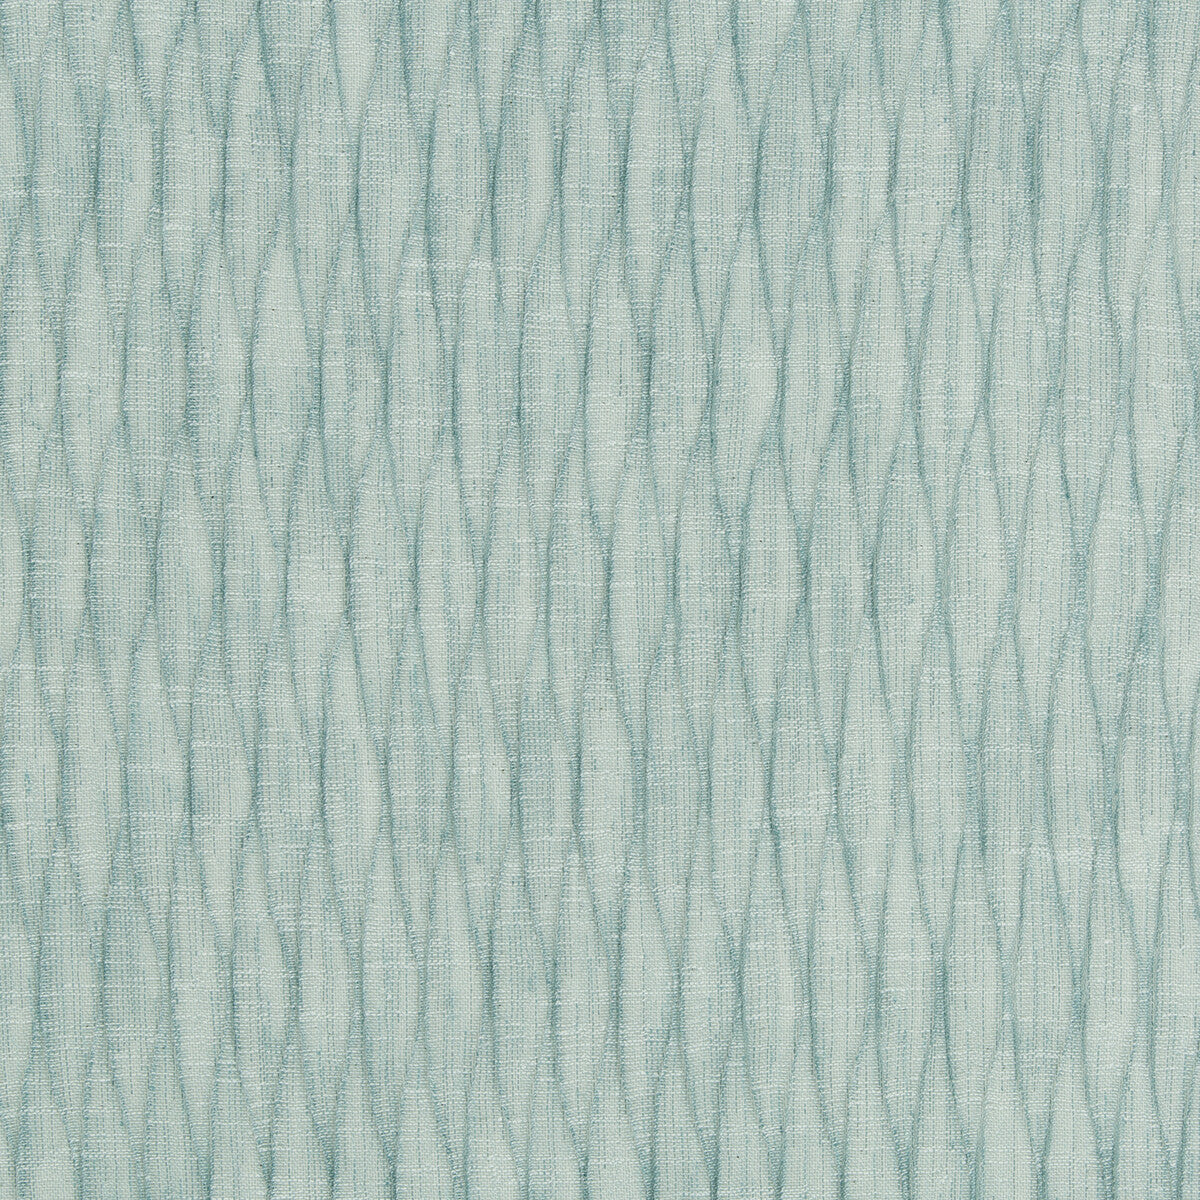 Kravet Design fabric in 4580-15 color - pattern 4580.15.0 - by Kravet Design